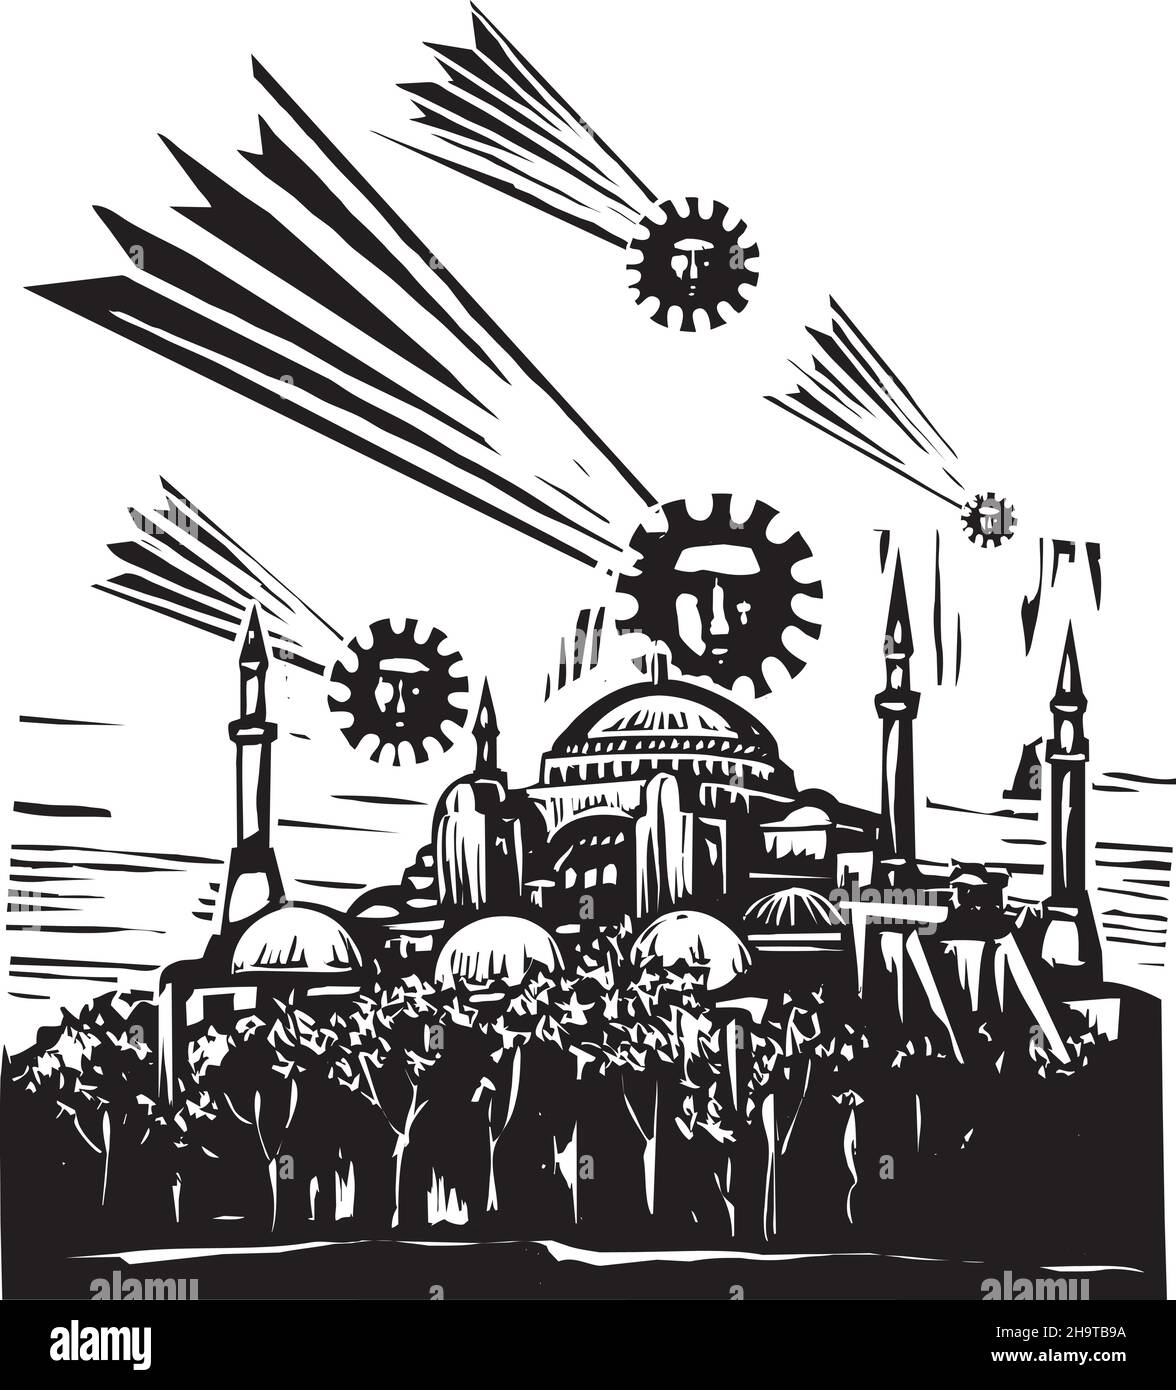 Expressionistische Holzschnitt-Illustration von Kometen, die wie Sporen über der hagia sophia in istanbul aussehen Stock Vektor